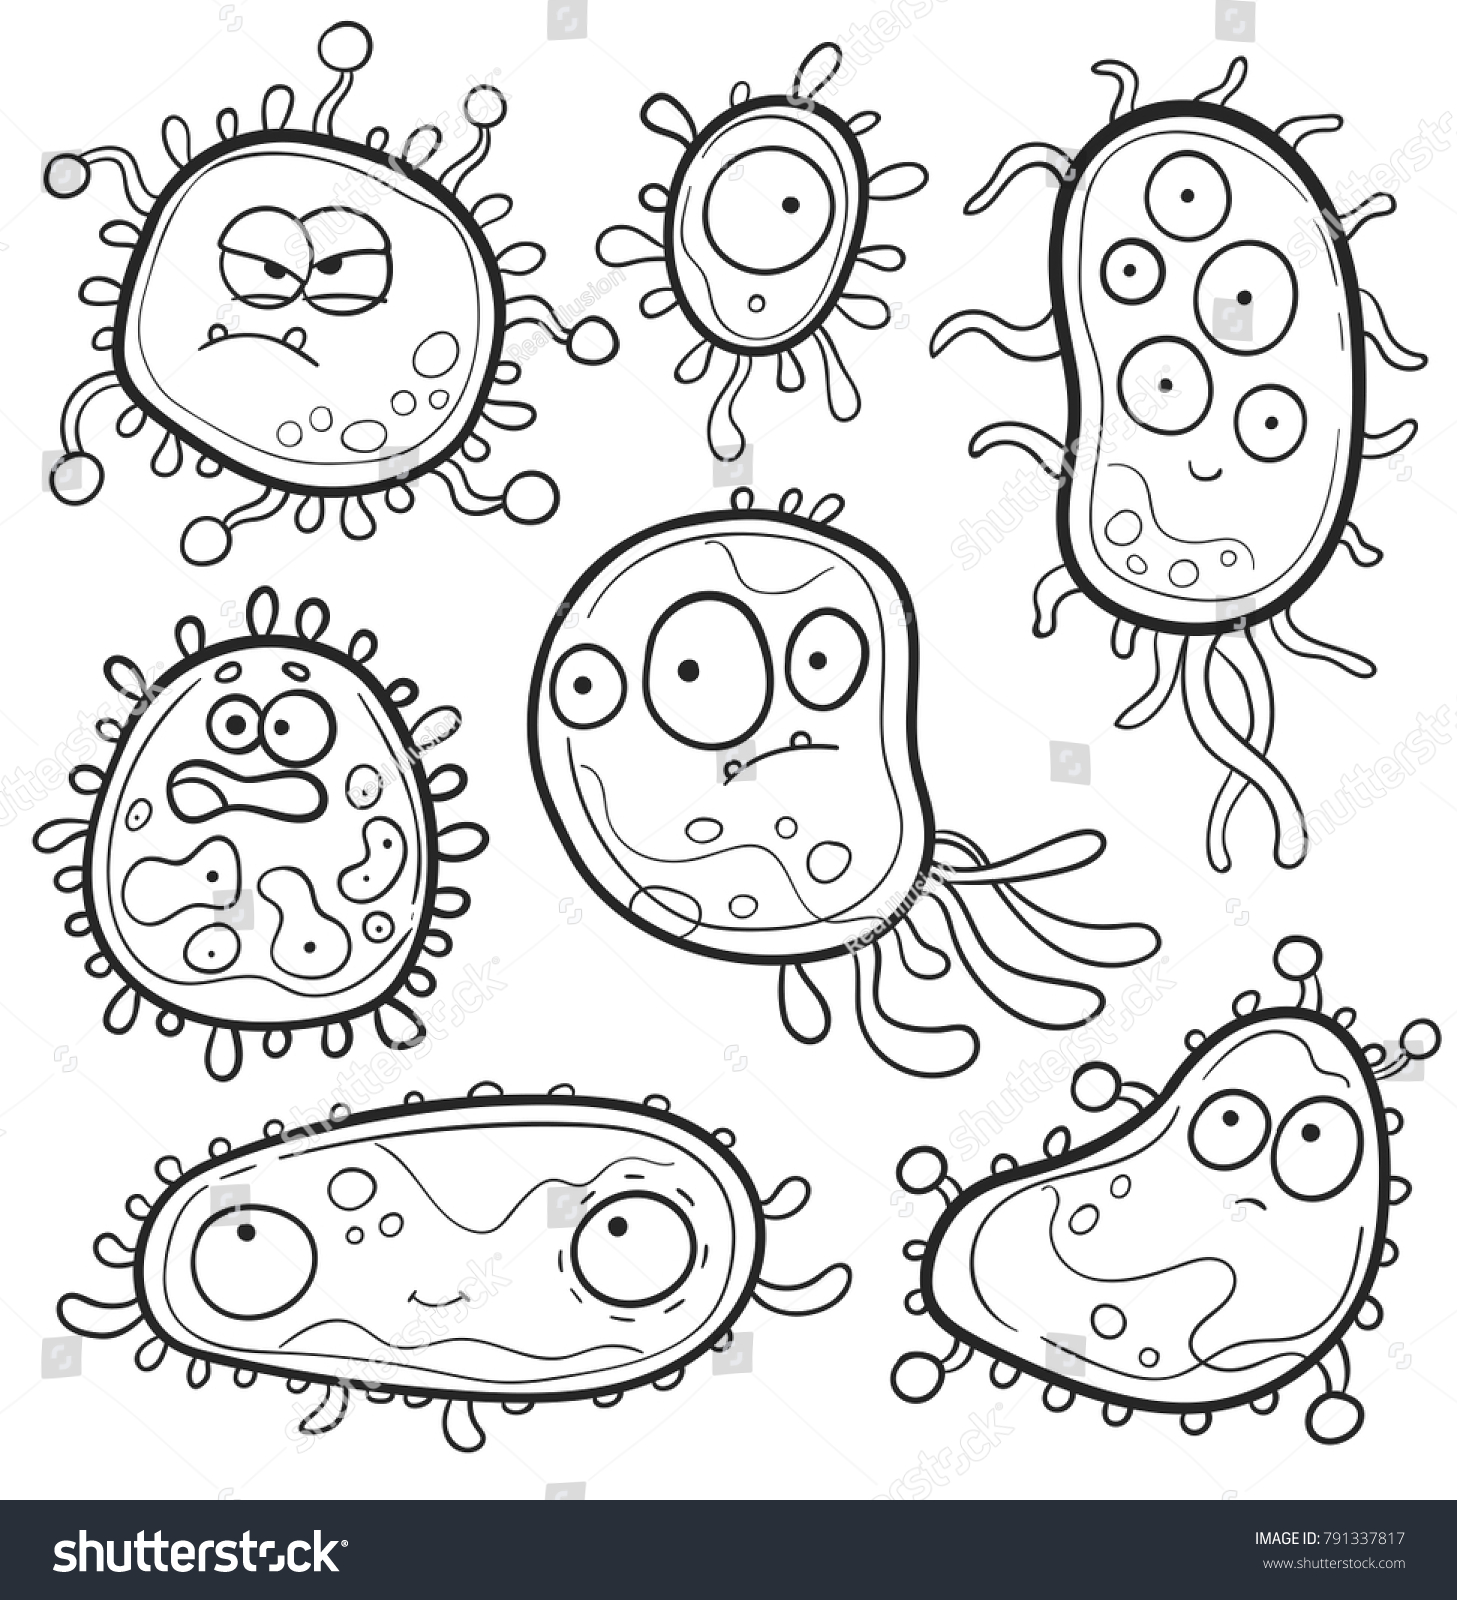 Микробы для раскрашивания детям